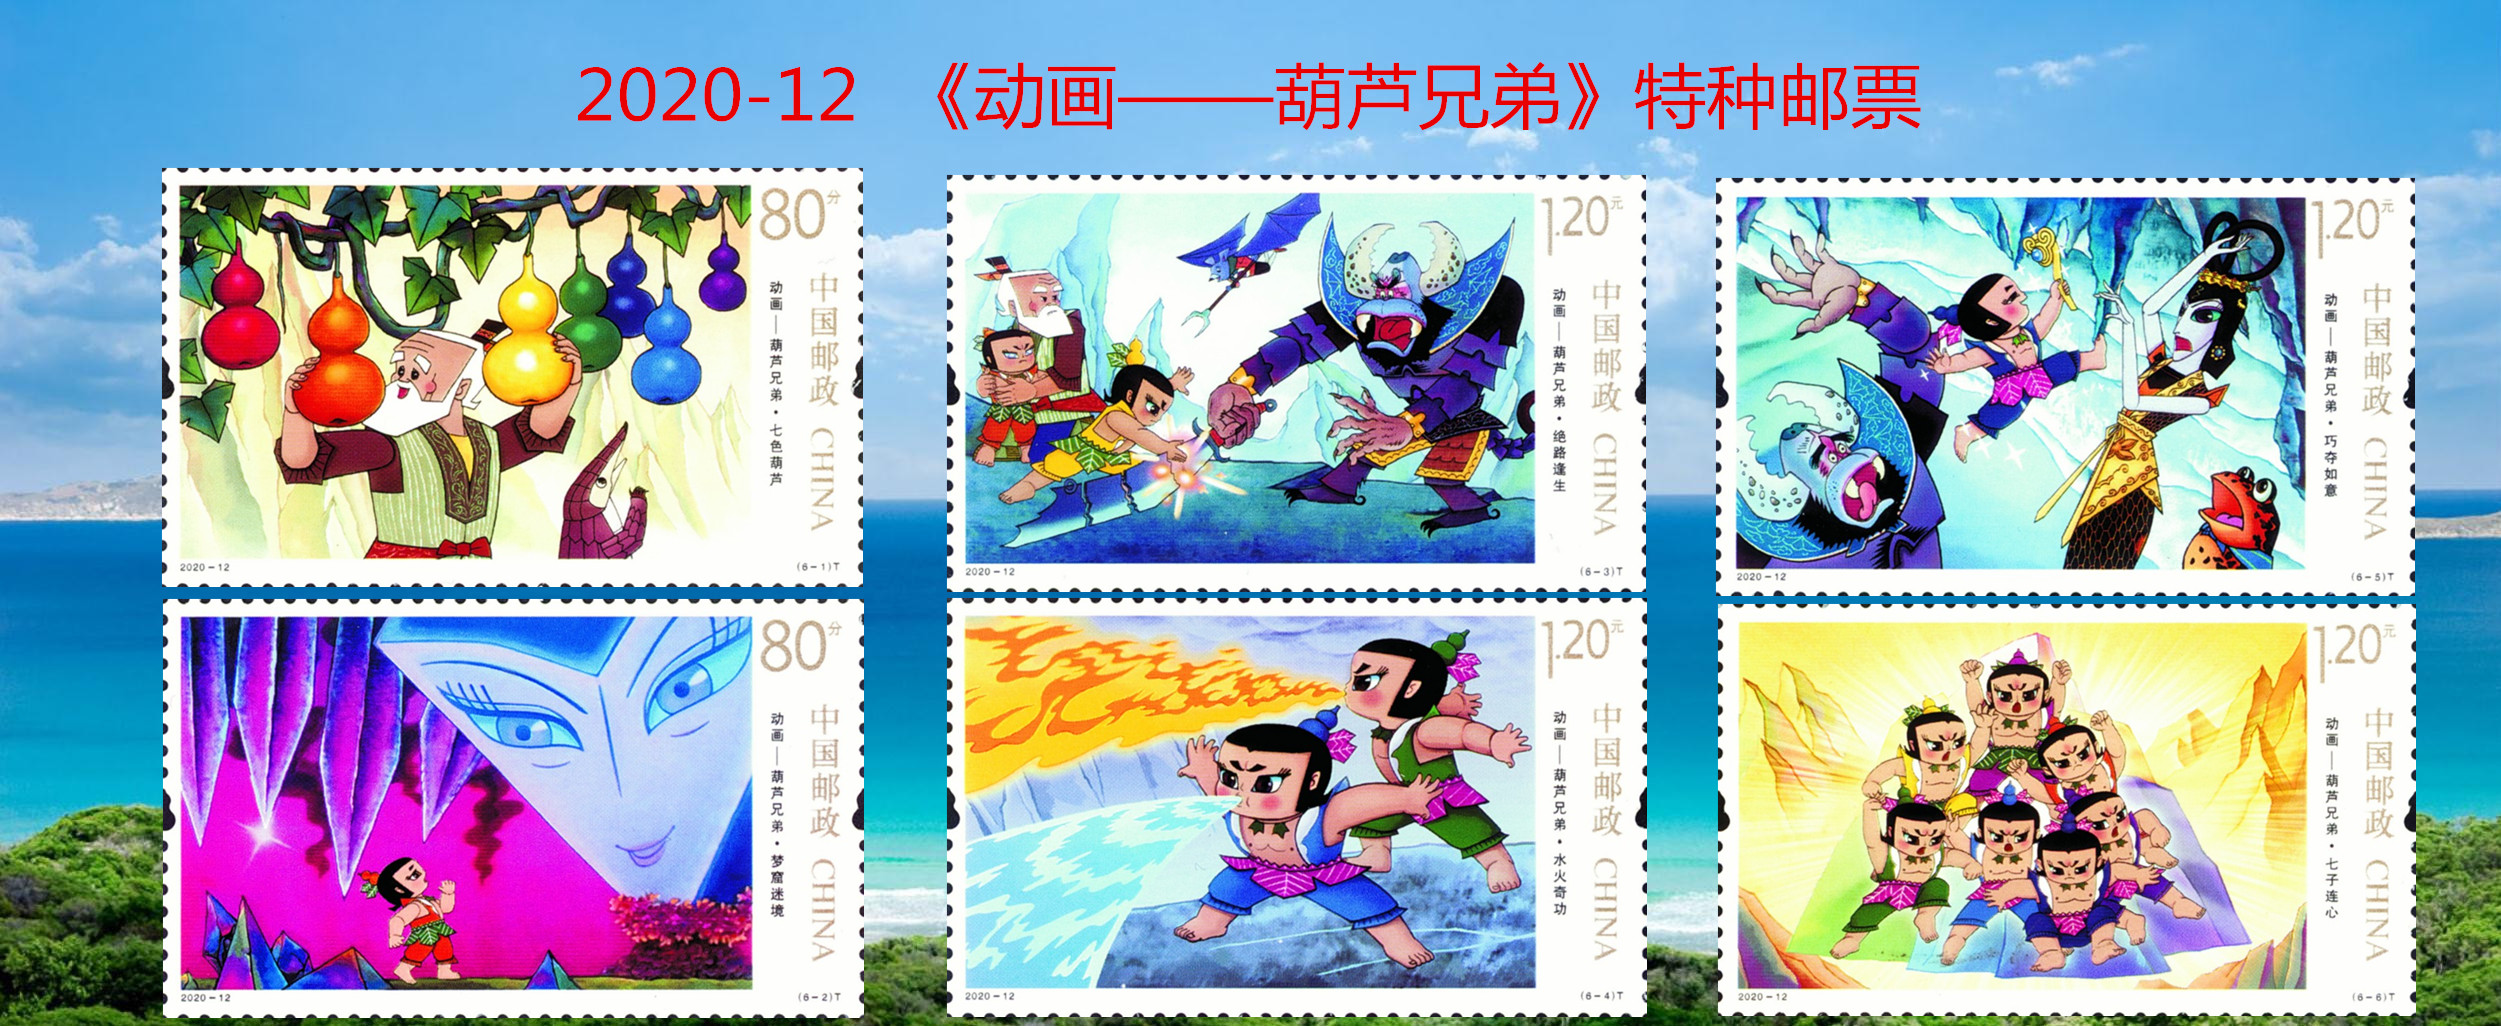 2020-12 邮票.jpg